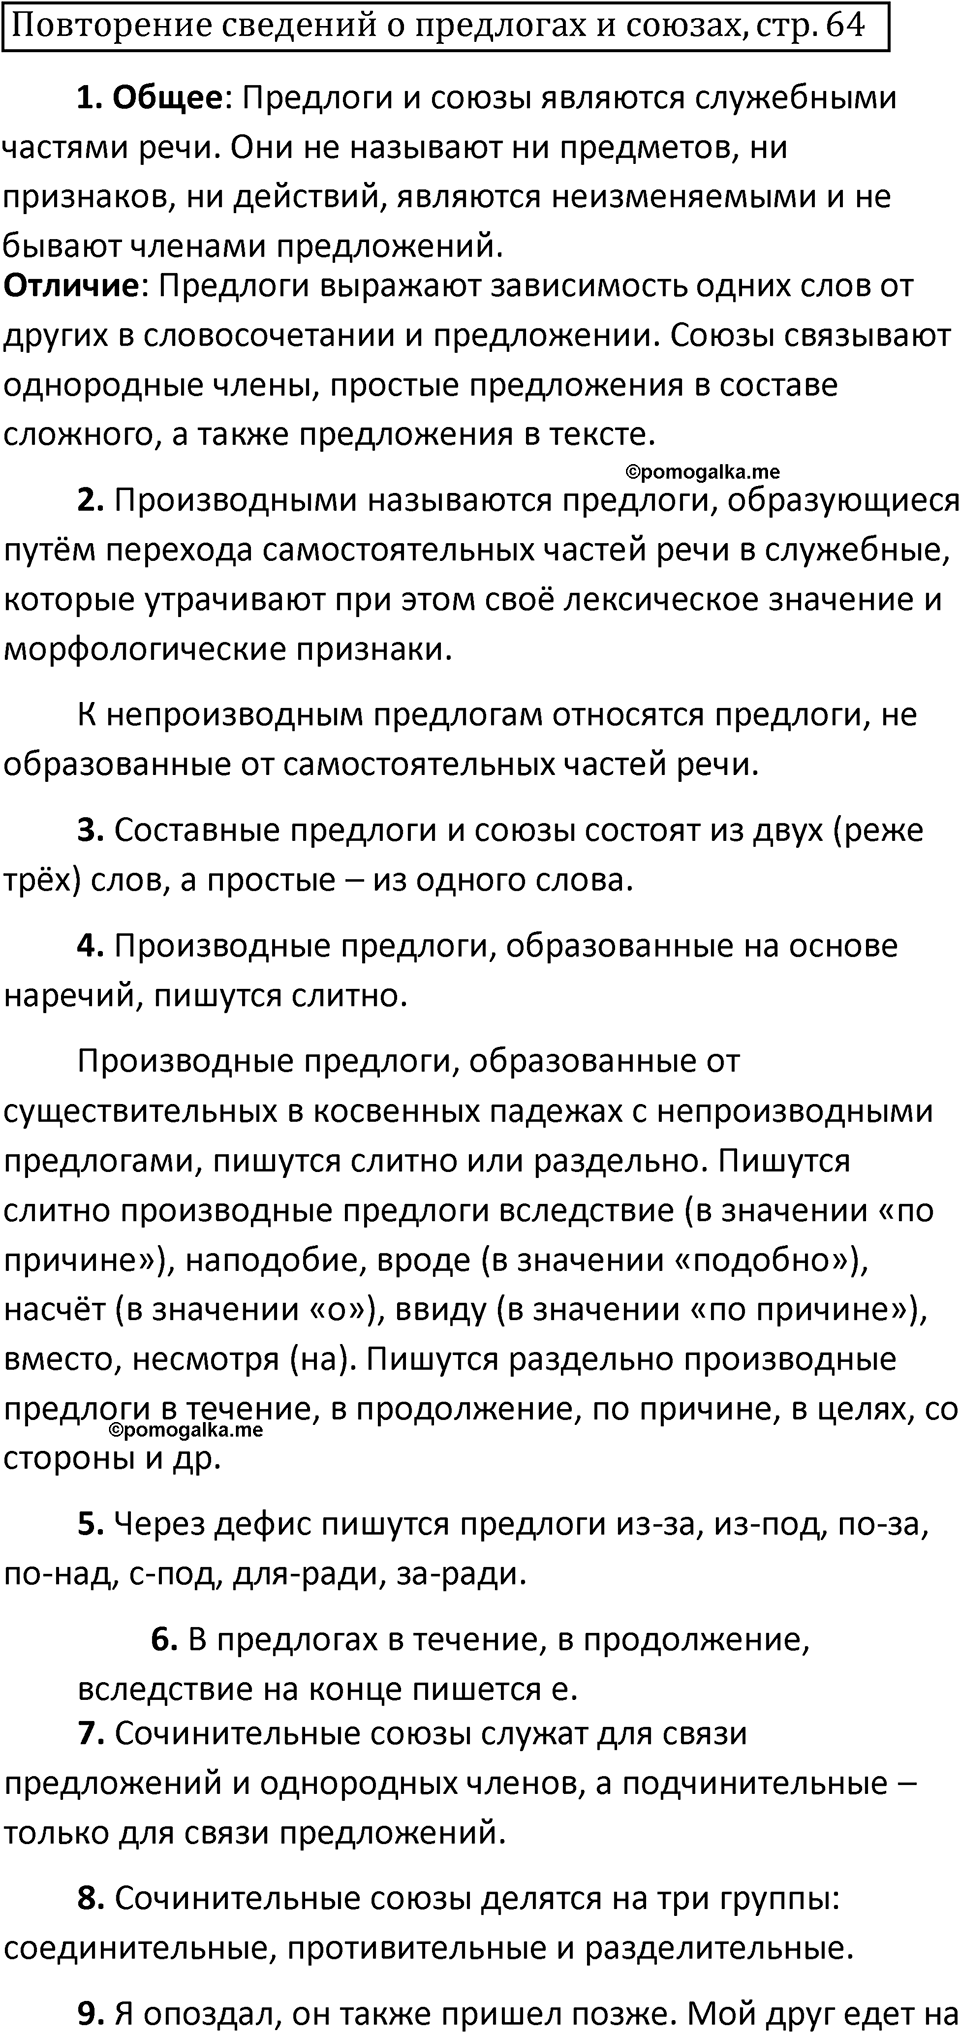 страница 64 повторение русский язык 7 класс Баранов, Ладыженская 2021-2022 год